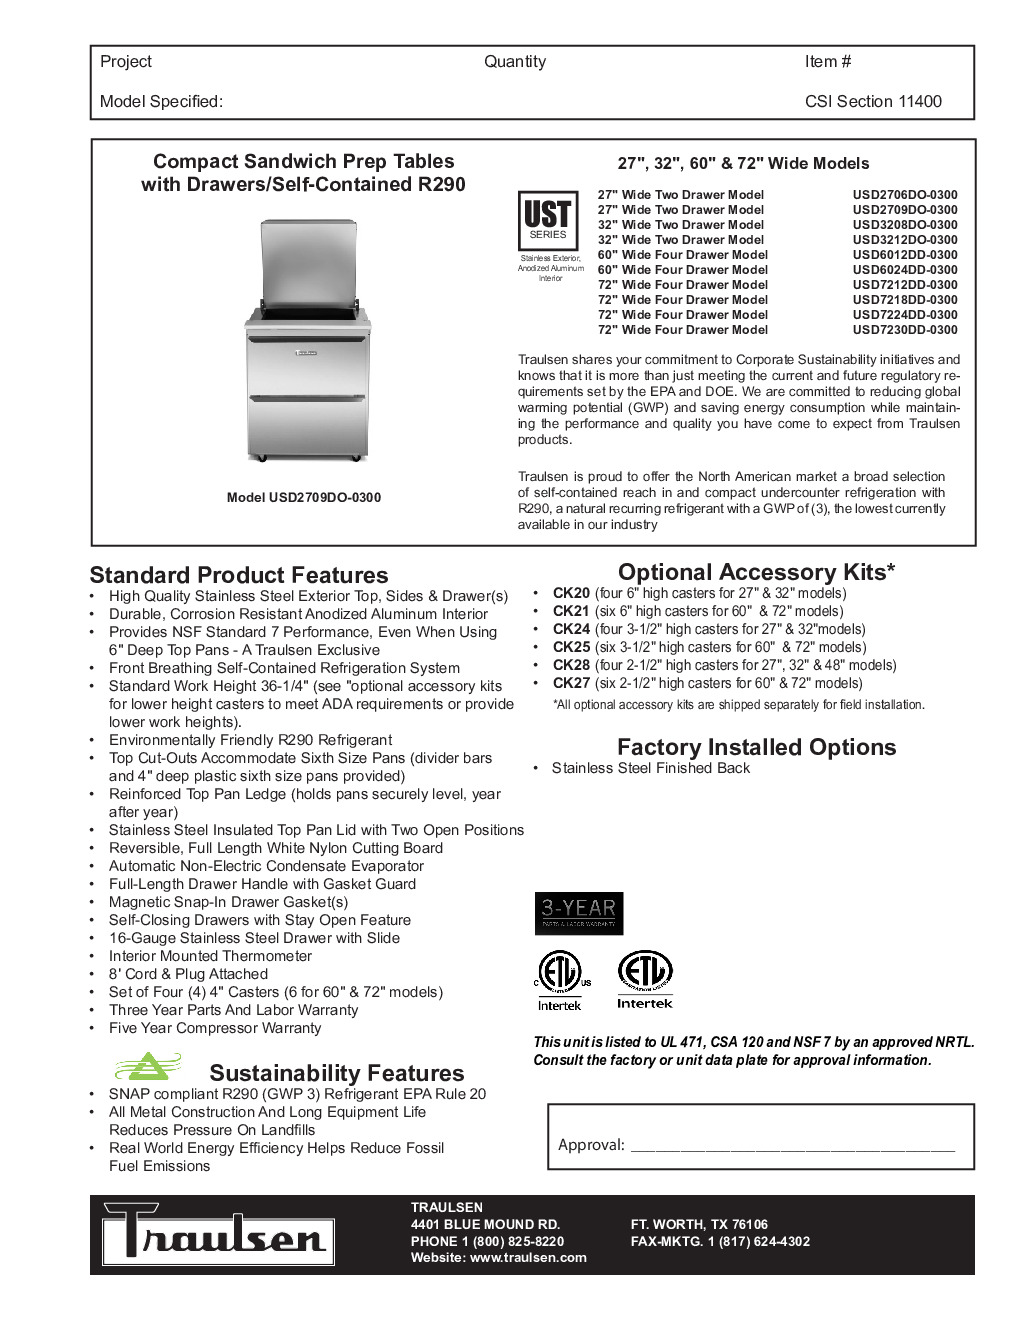 Traulsen USD7230DD-0300-SB Sandwich / Salad Unit Refrigerated Counter